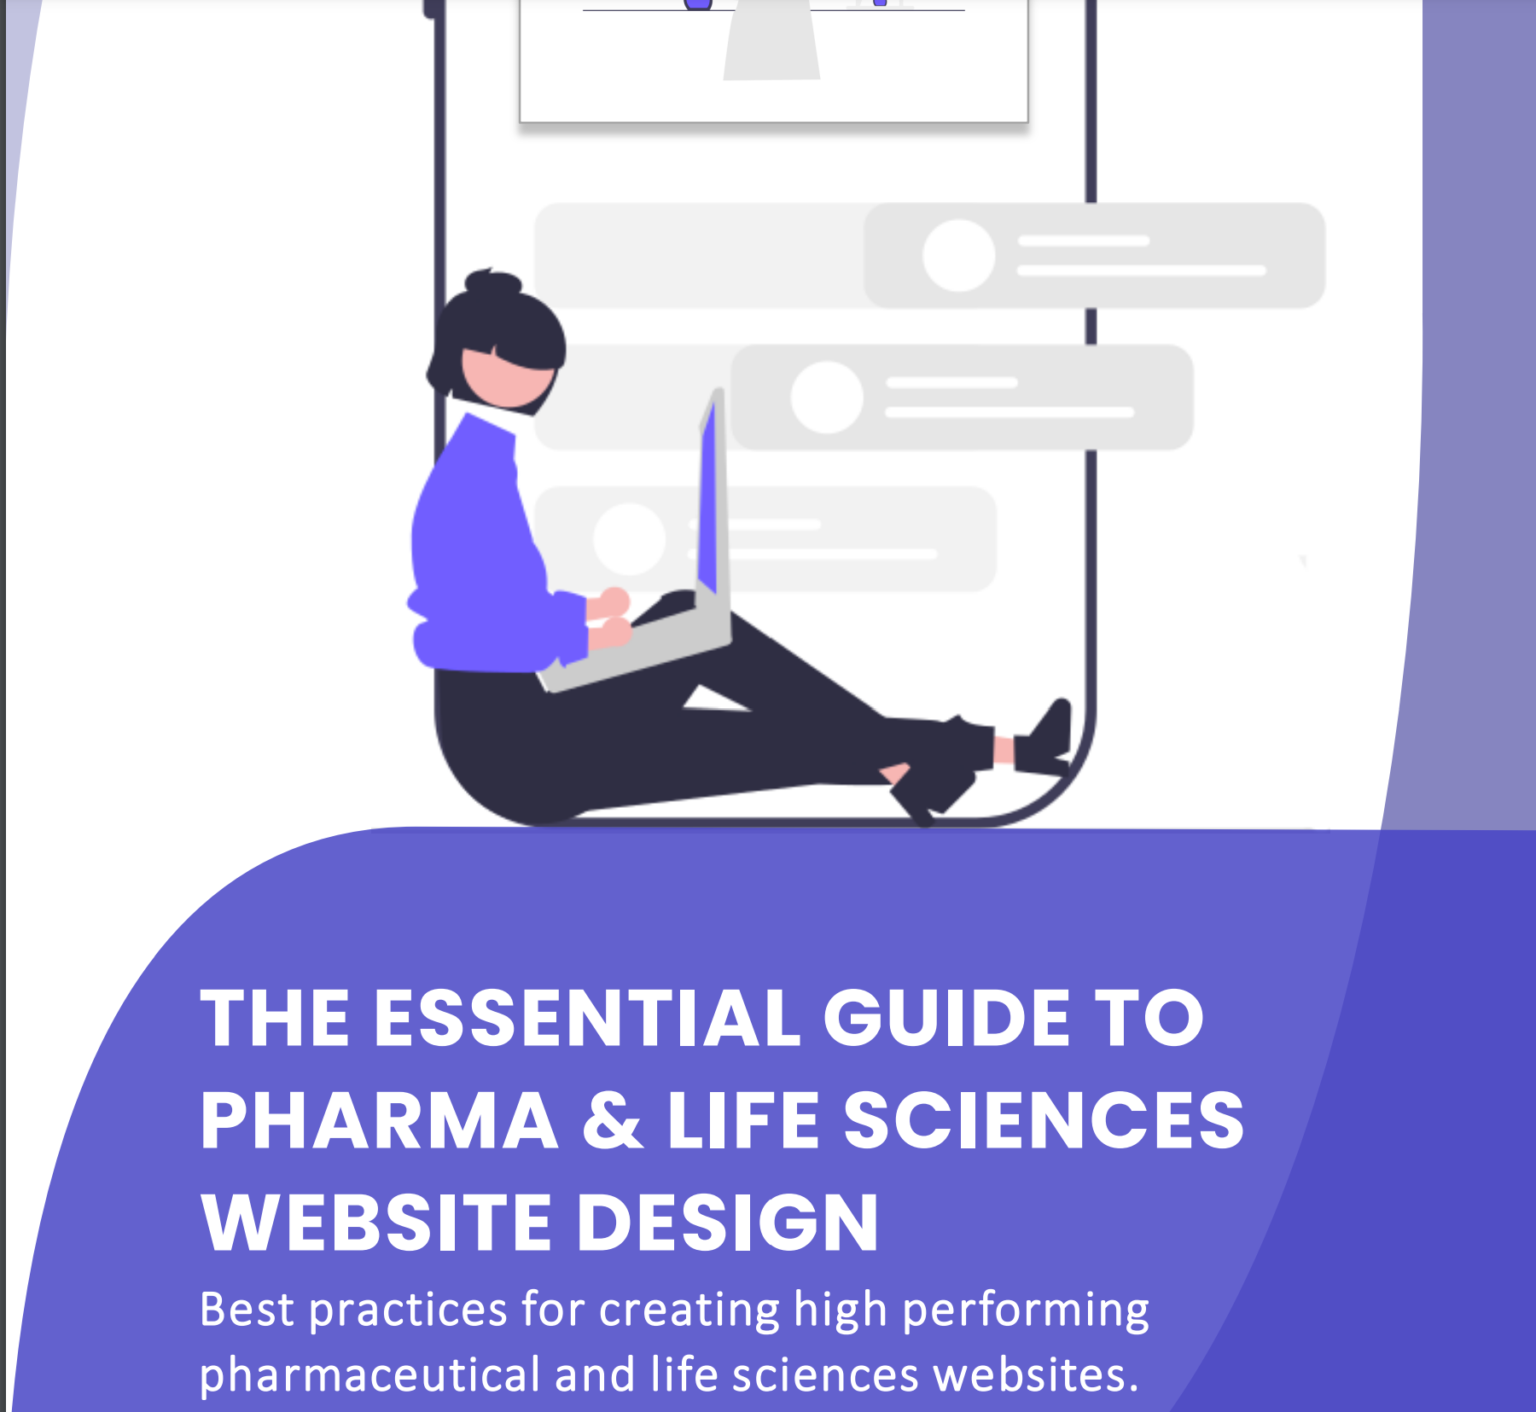 The Essential Guide to Pharma & Life Sciences Website Design